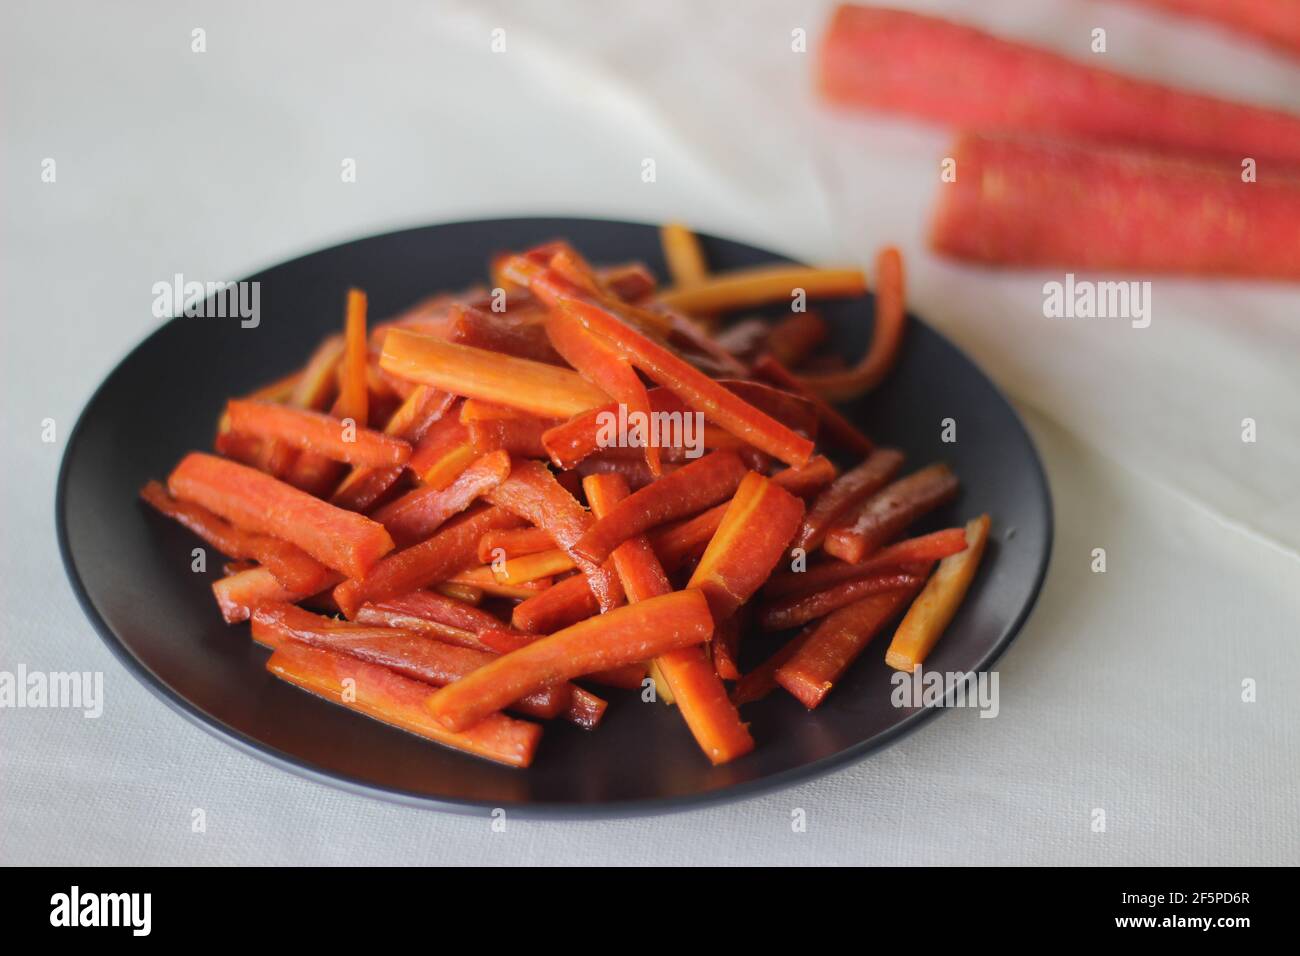 Bâtonnets de carottes caramélisés. Les carottes sautées avec du beurre et du sucre. Une collation rapide et saine. Prise de vue sur fond blanc Banque D'Images